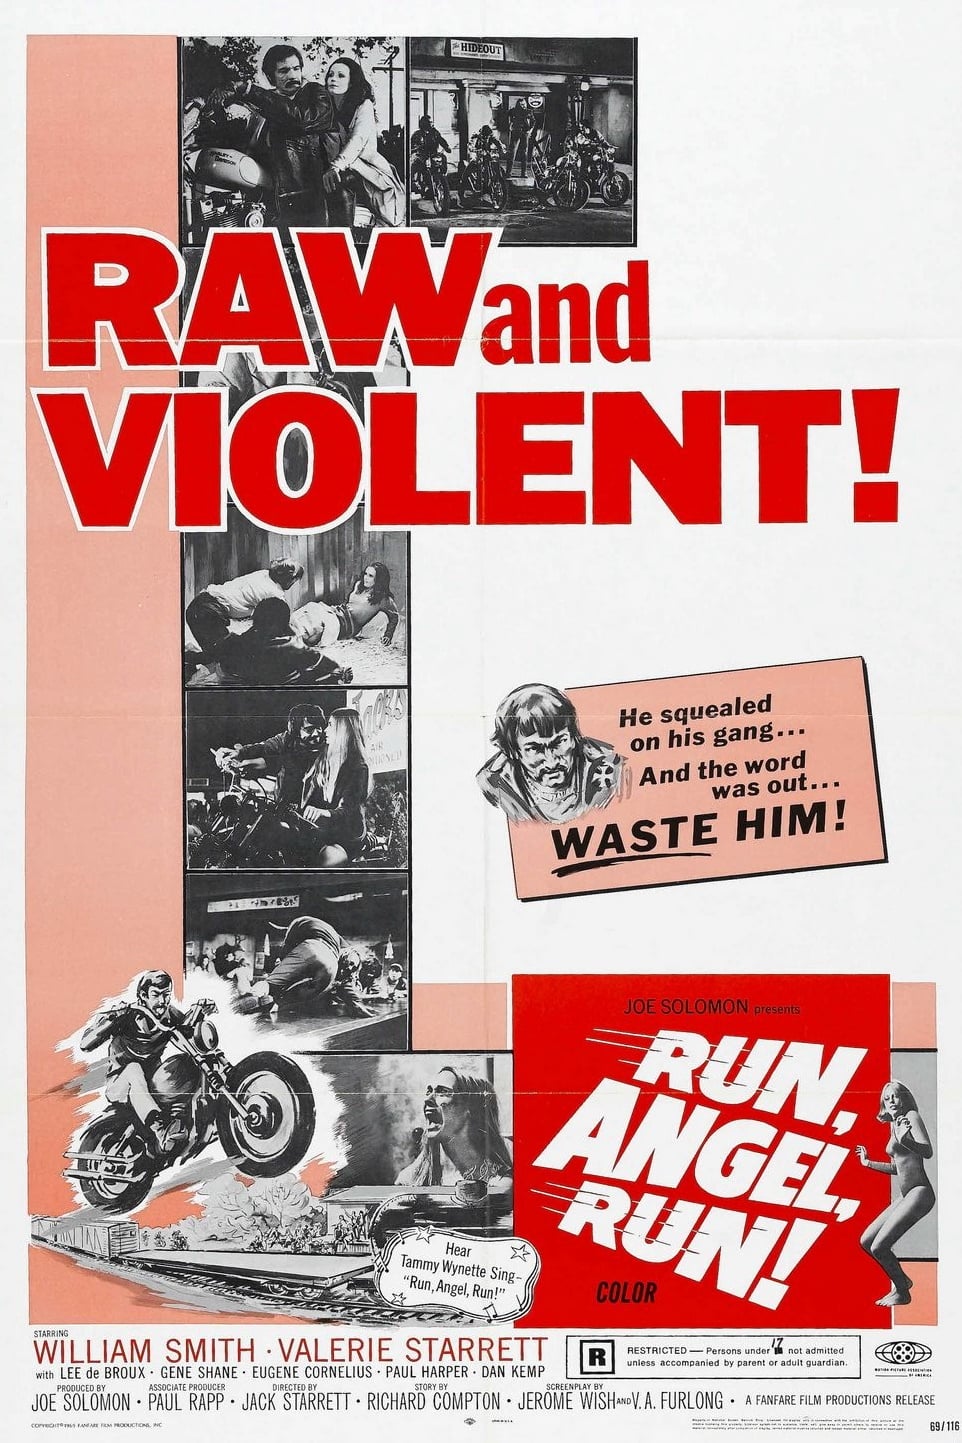 Run, Angel, Run! (1969)